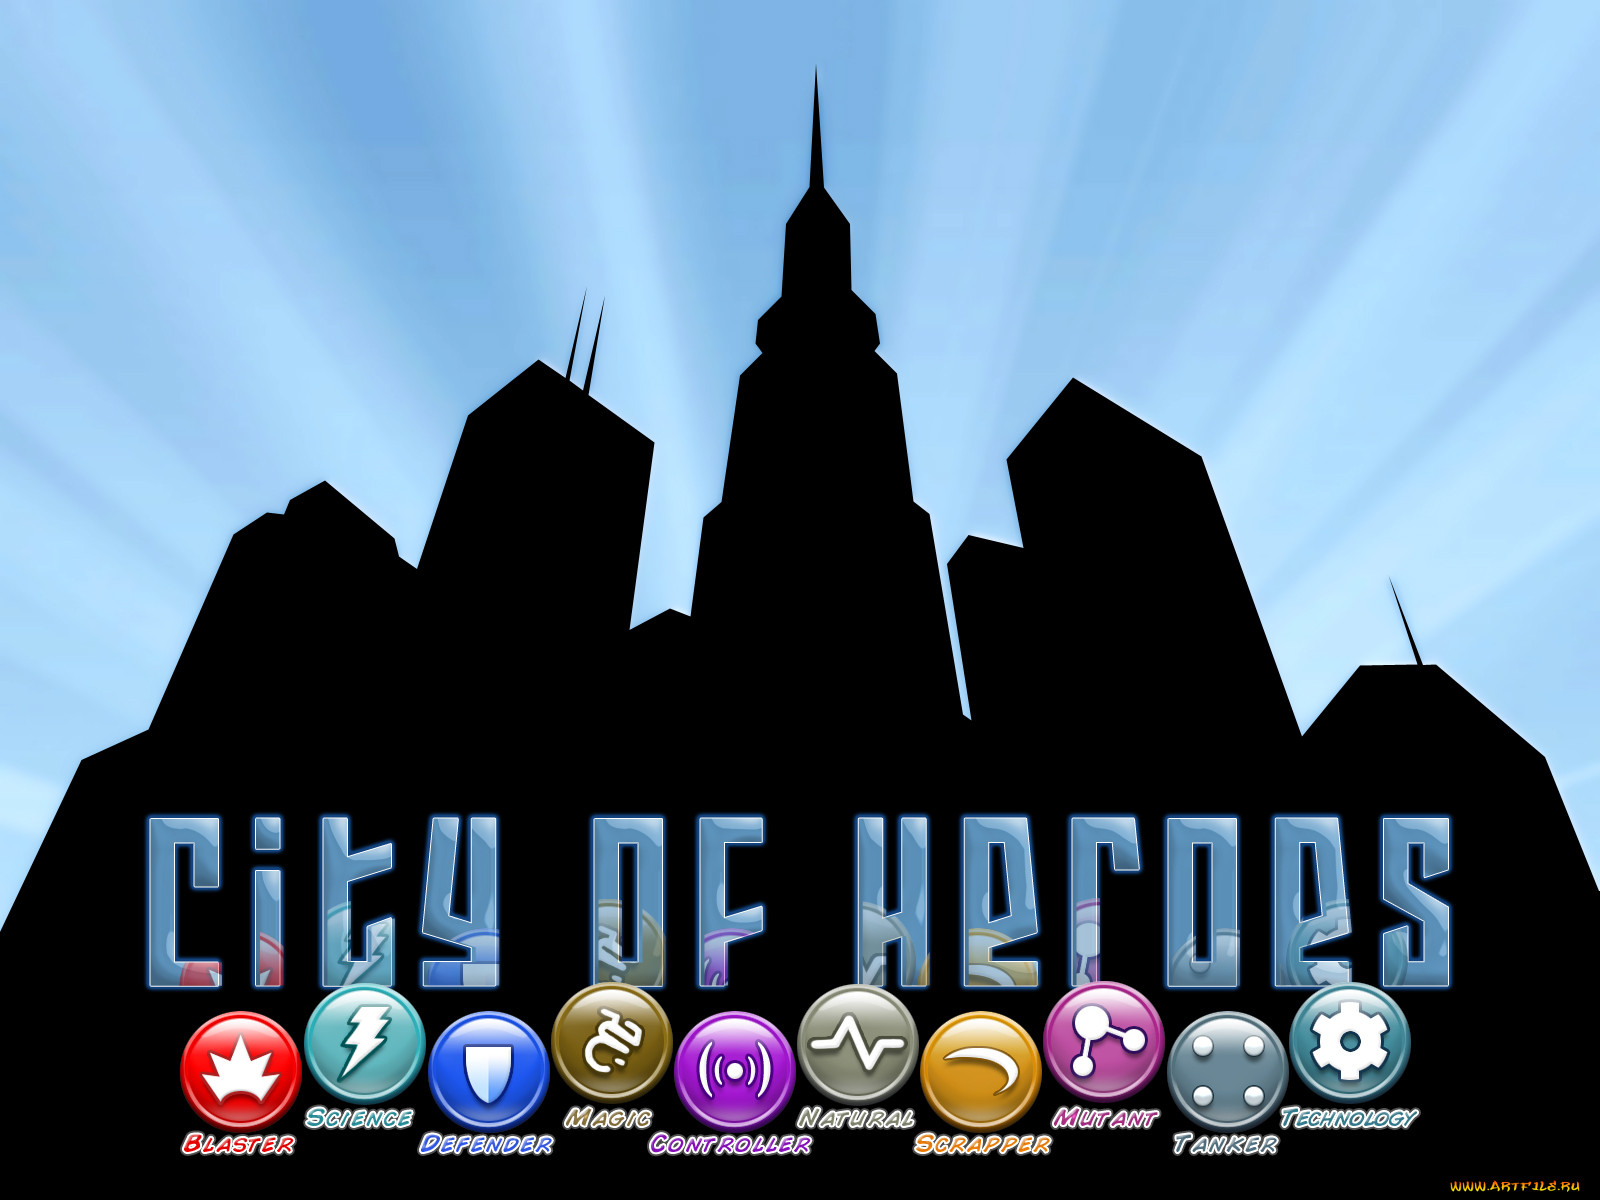 , , city, of, heroes